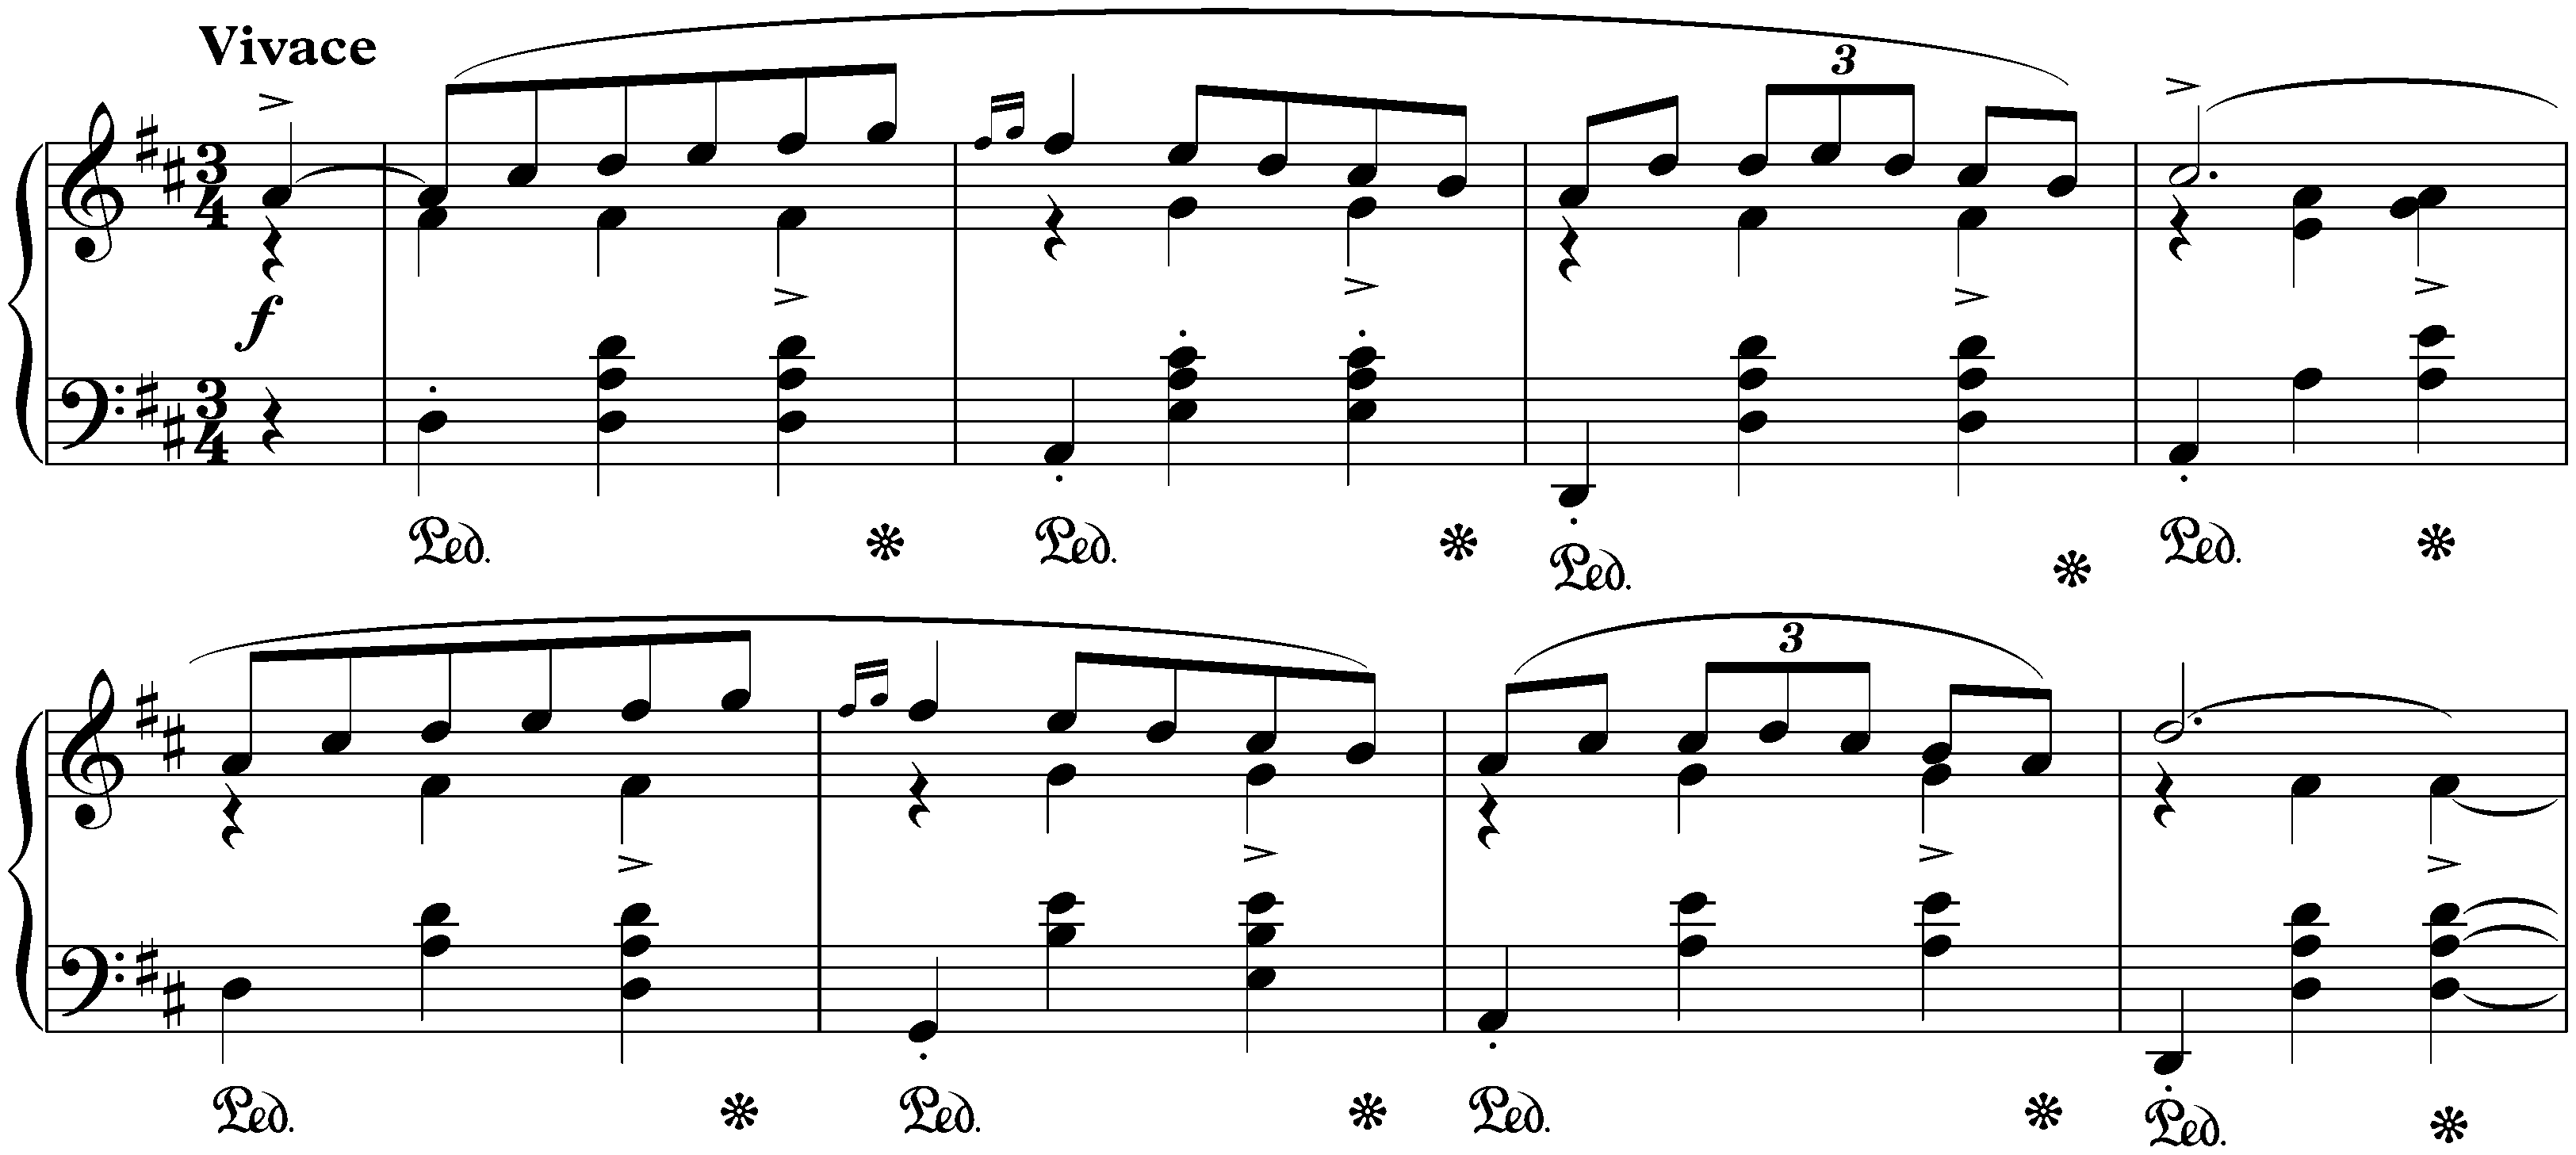 Four Mazurkas, op. 33; 2. D major